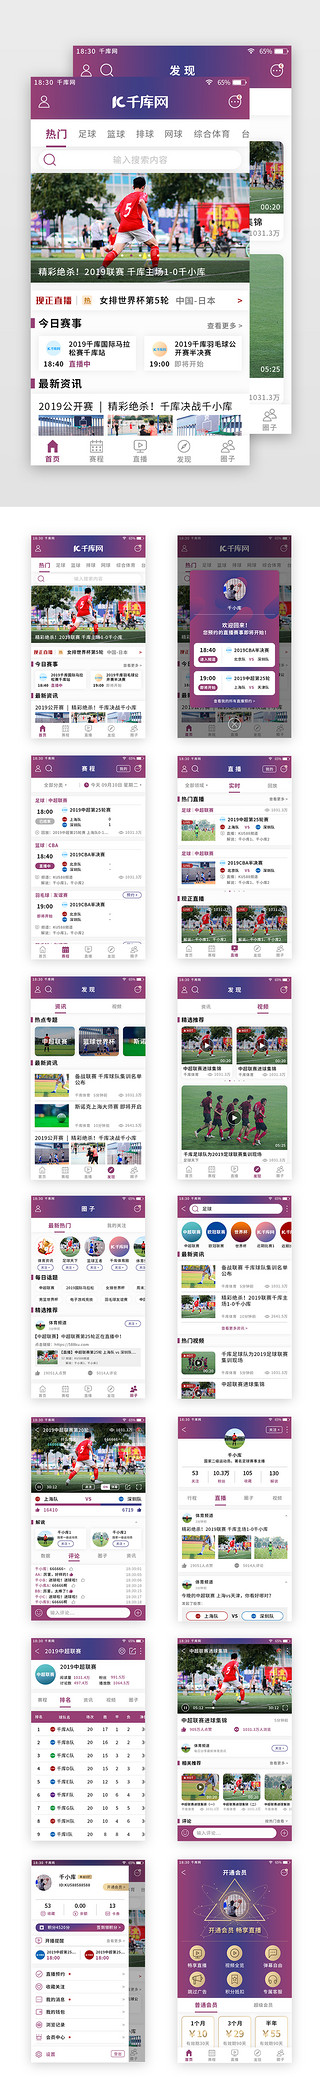 蓝紫色渐变体育新闻app套图